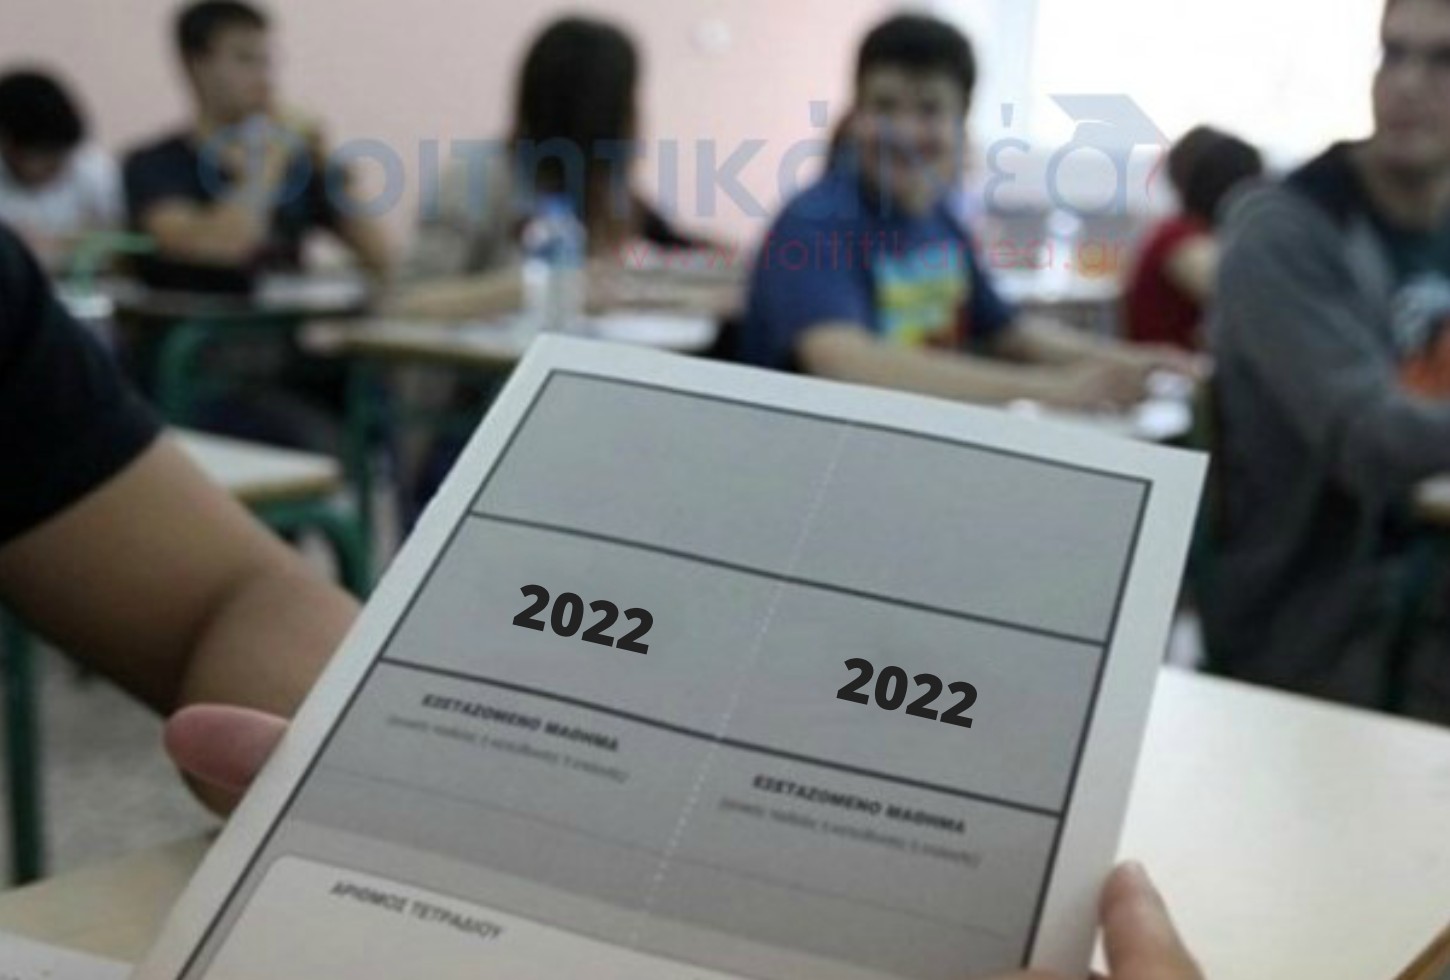  Πανελλήνιες 2022: Το Μάρτιο-Απρίλιο οι προκαταρκτικές εξετάσεις για Στρατιωτικές, Αστυνομικές & Λιμενικές Σχολές